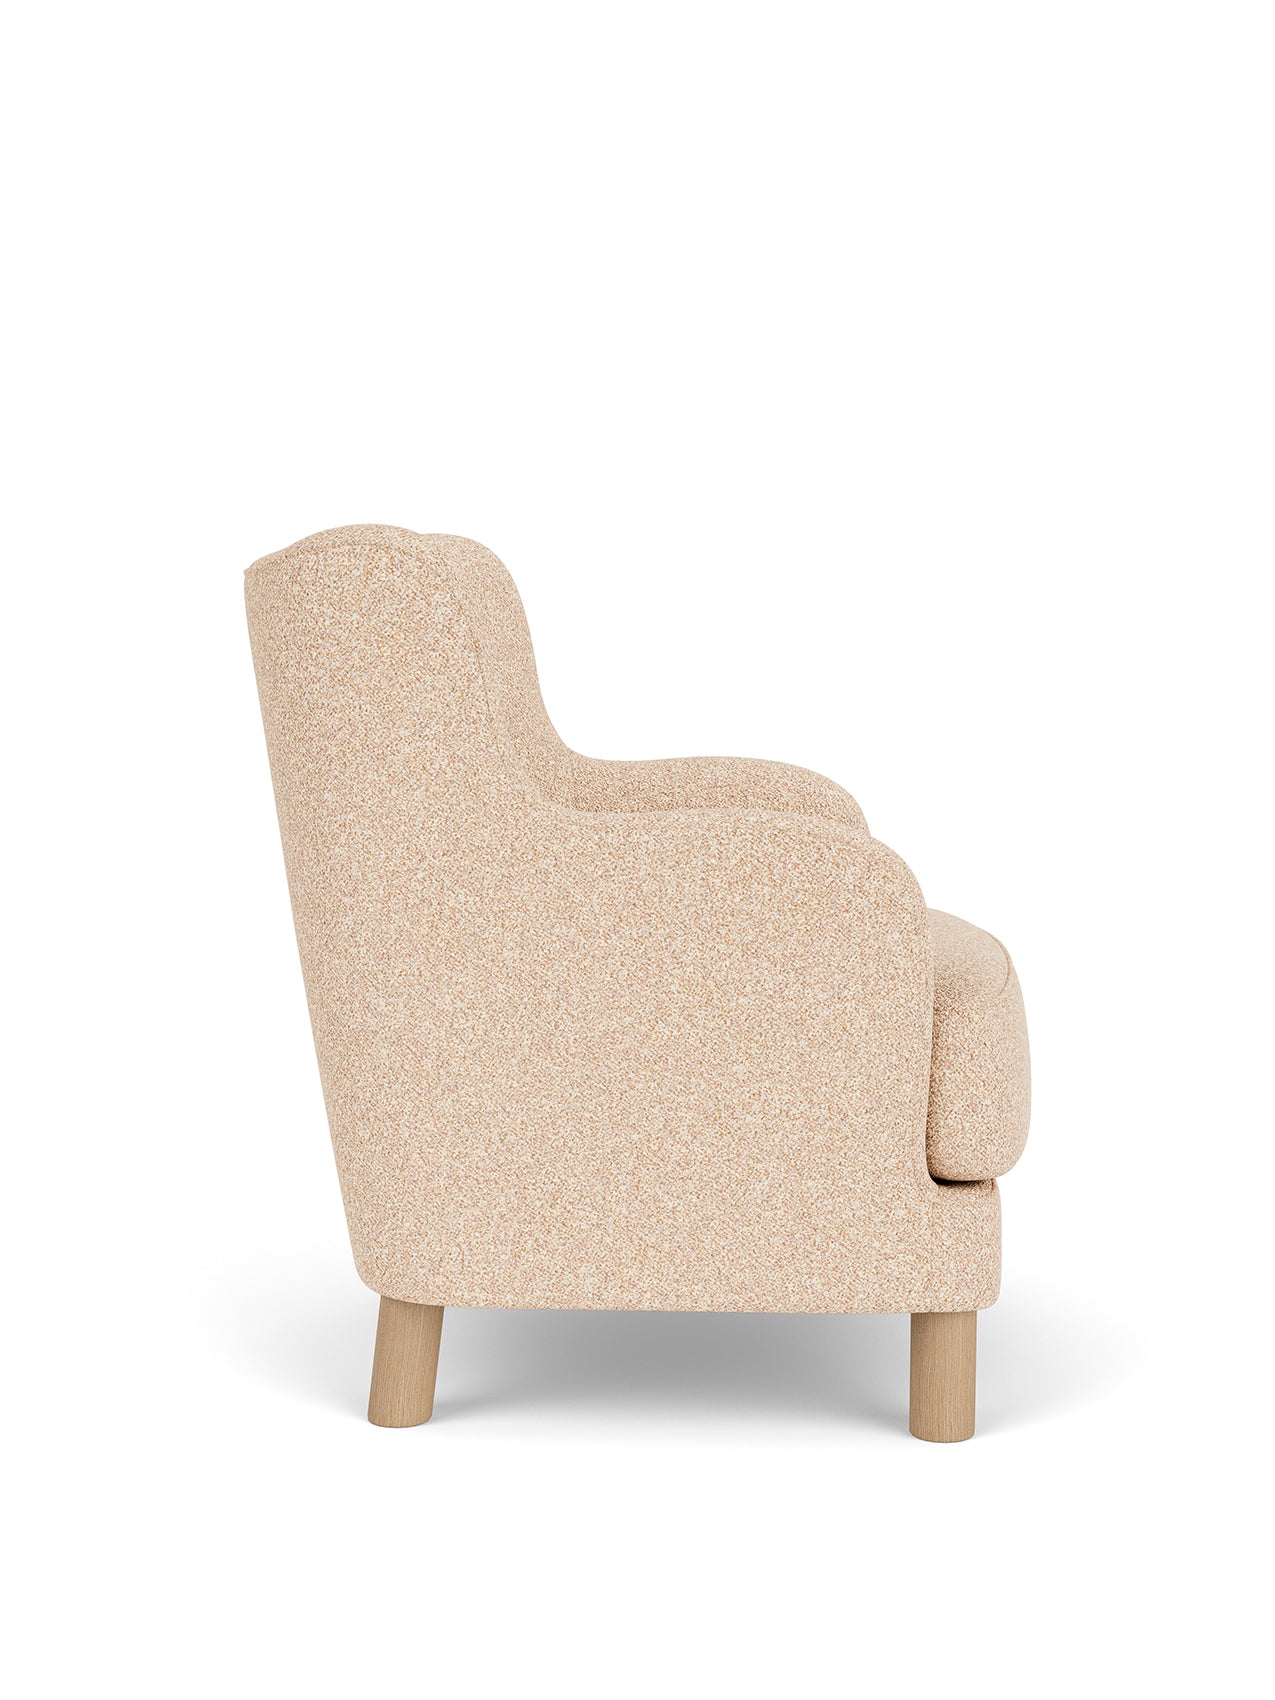 Constance Lounge Chair, Textile